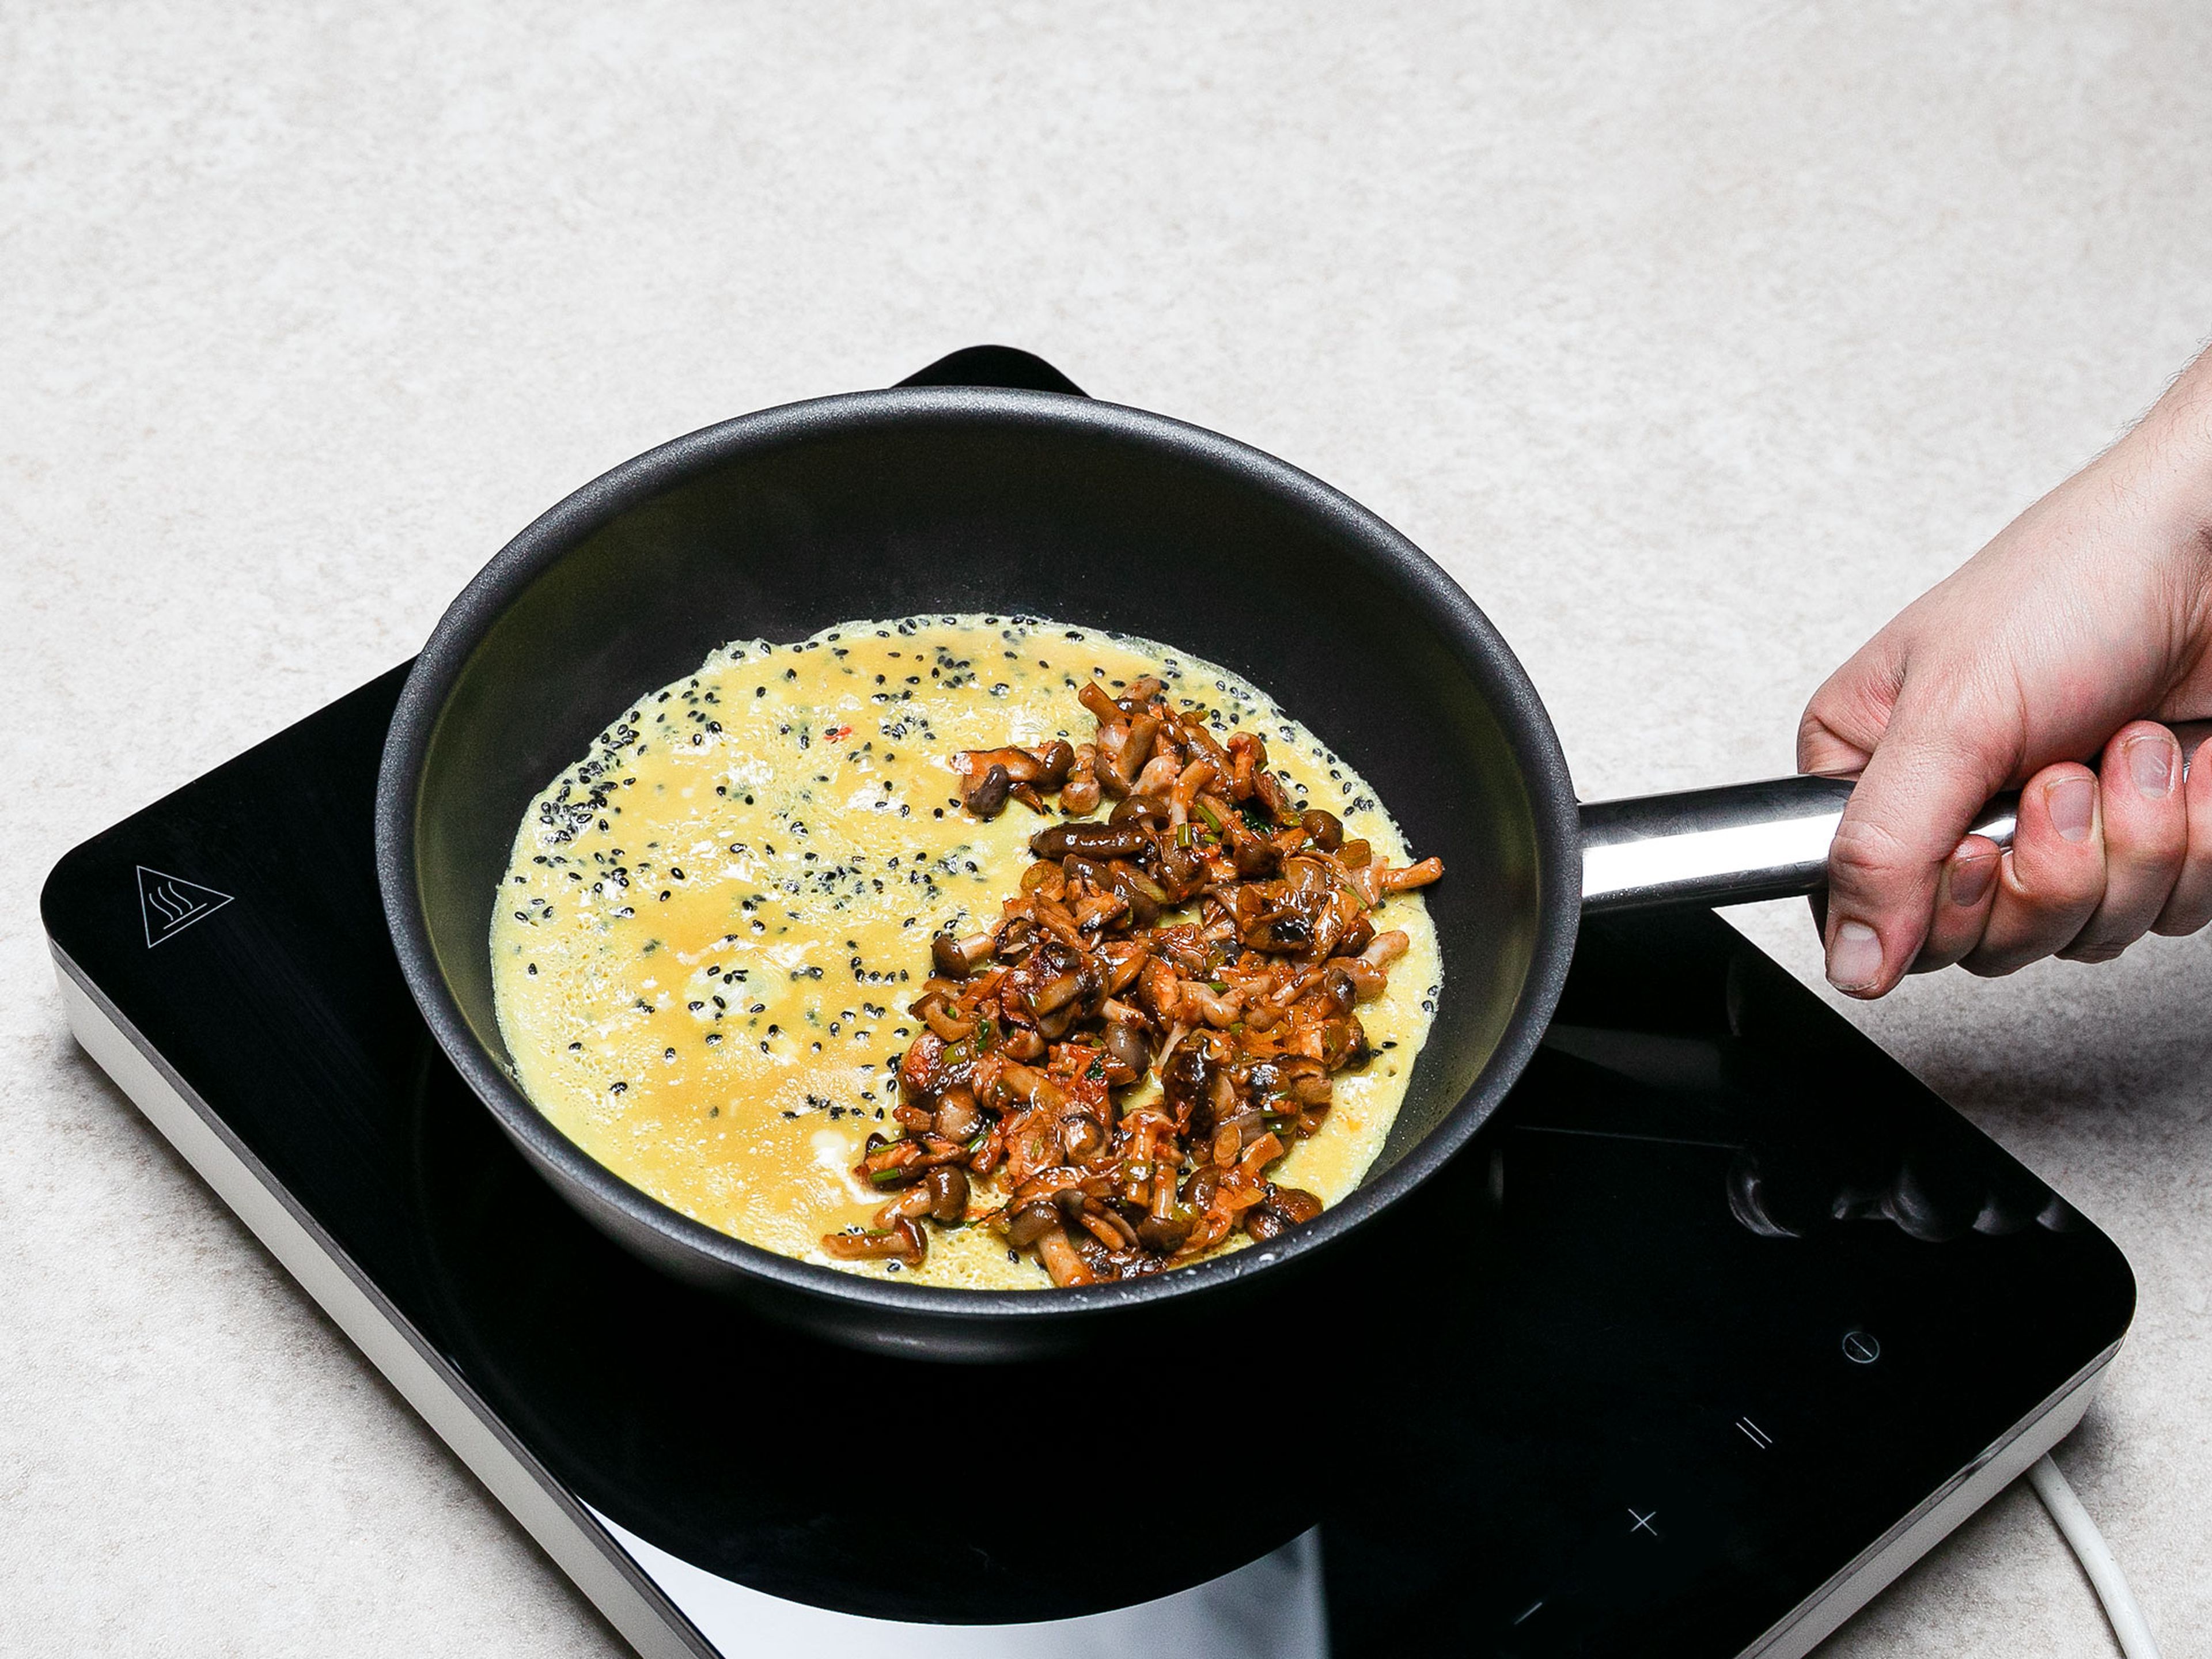 Pflanzenöl in einer großen Pfanne erhitzen. Eier mit Fischsauce, schwarzen Sesam und Chili in einer Rührschüssel verquirlen. Mit Salz und Pfeffer abschmecken. Hälfte der Eier in die heiße Pfanne geben und zu einem dünnen Crêpe ausbacken. Danach die Hälfte der zubereiteten Pilzmischung auf eine Seite geben und zu einem Omelette zusammenfalten. Mit den restlichen Zutaten wiederholen, um ein zweites Omelette zuzubereiten.